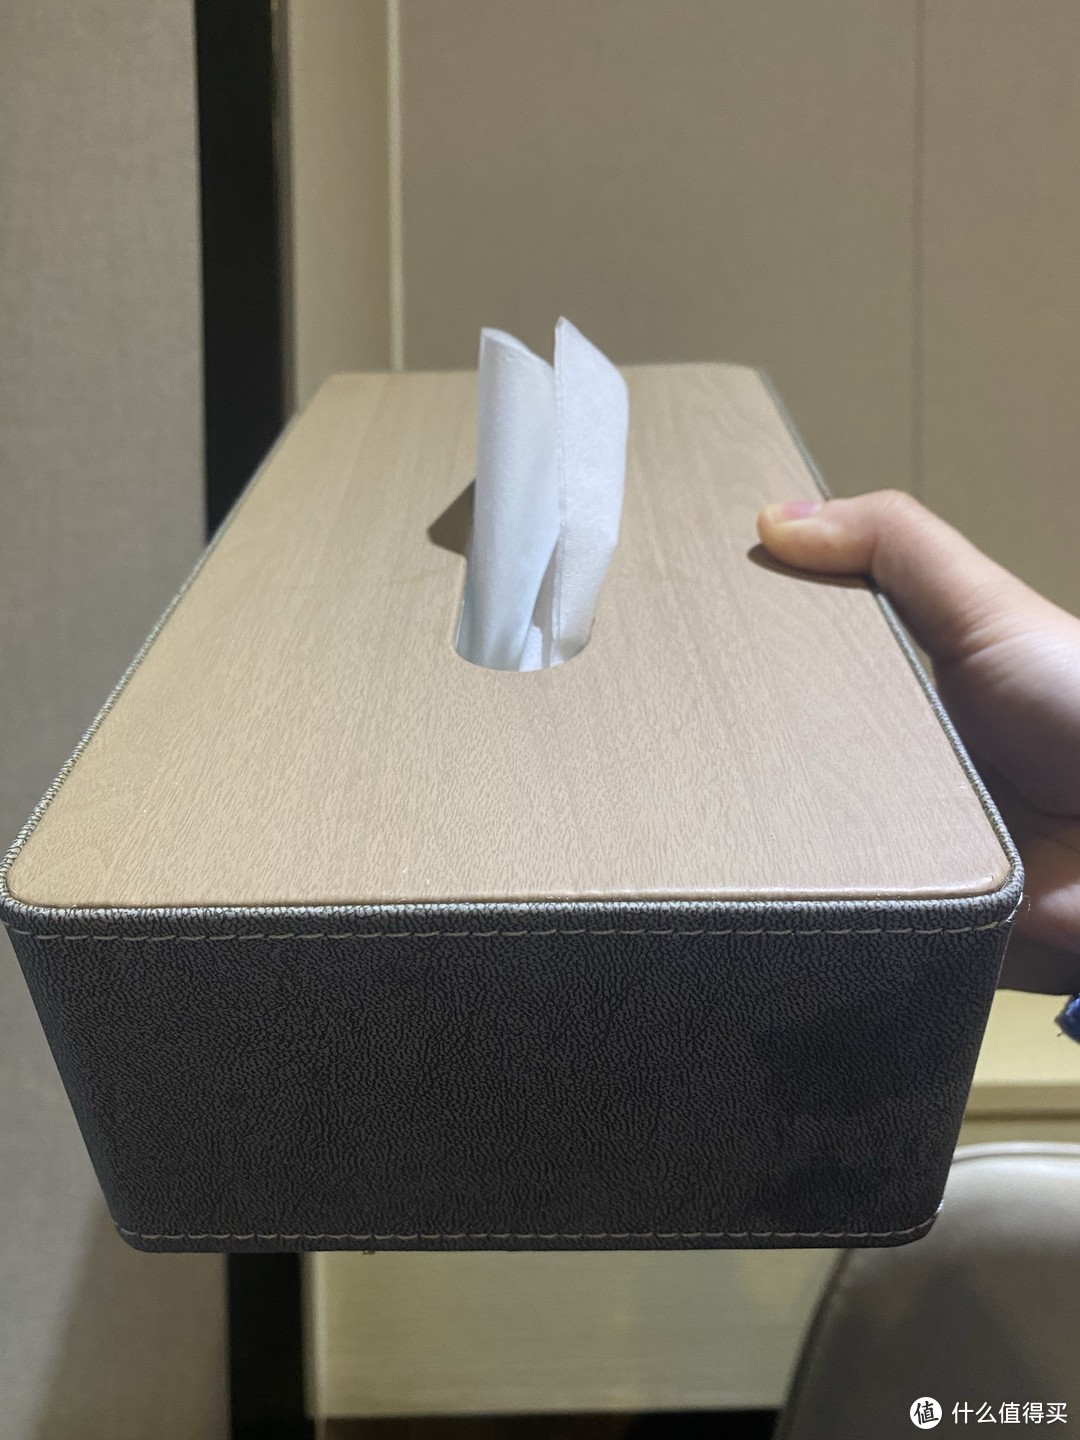 你敢信这居然是个纸巾盒？